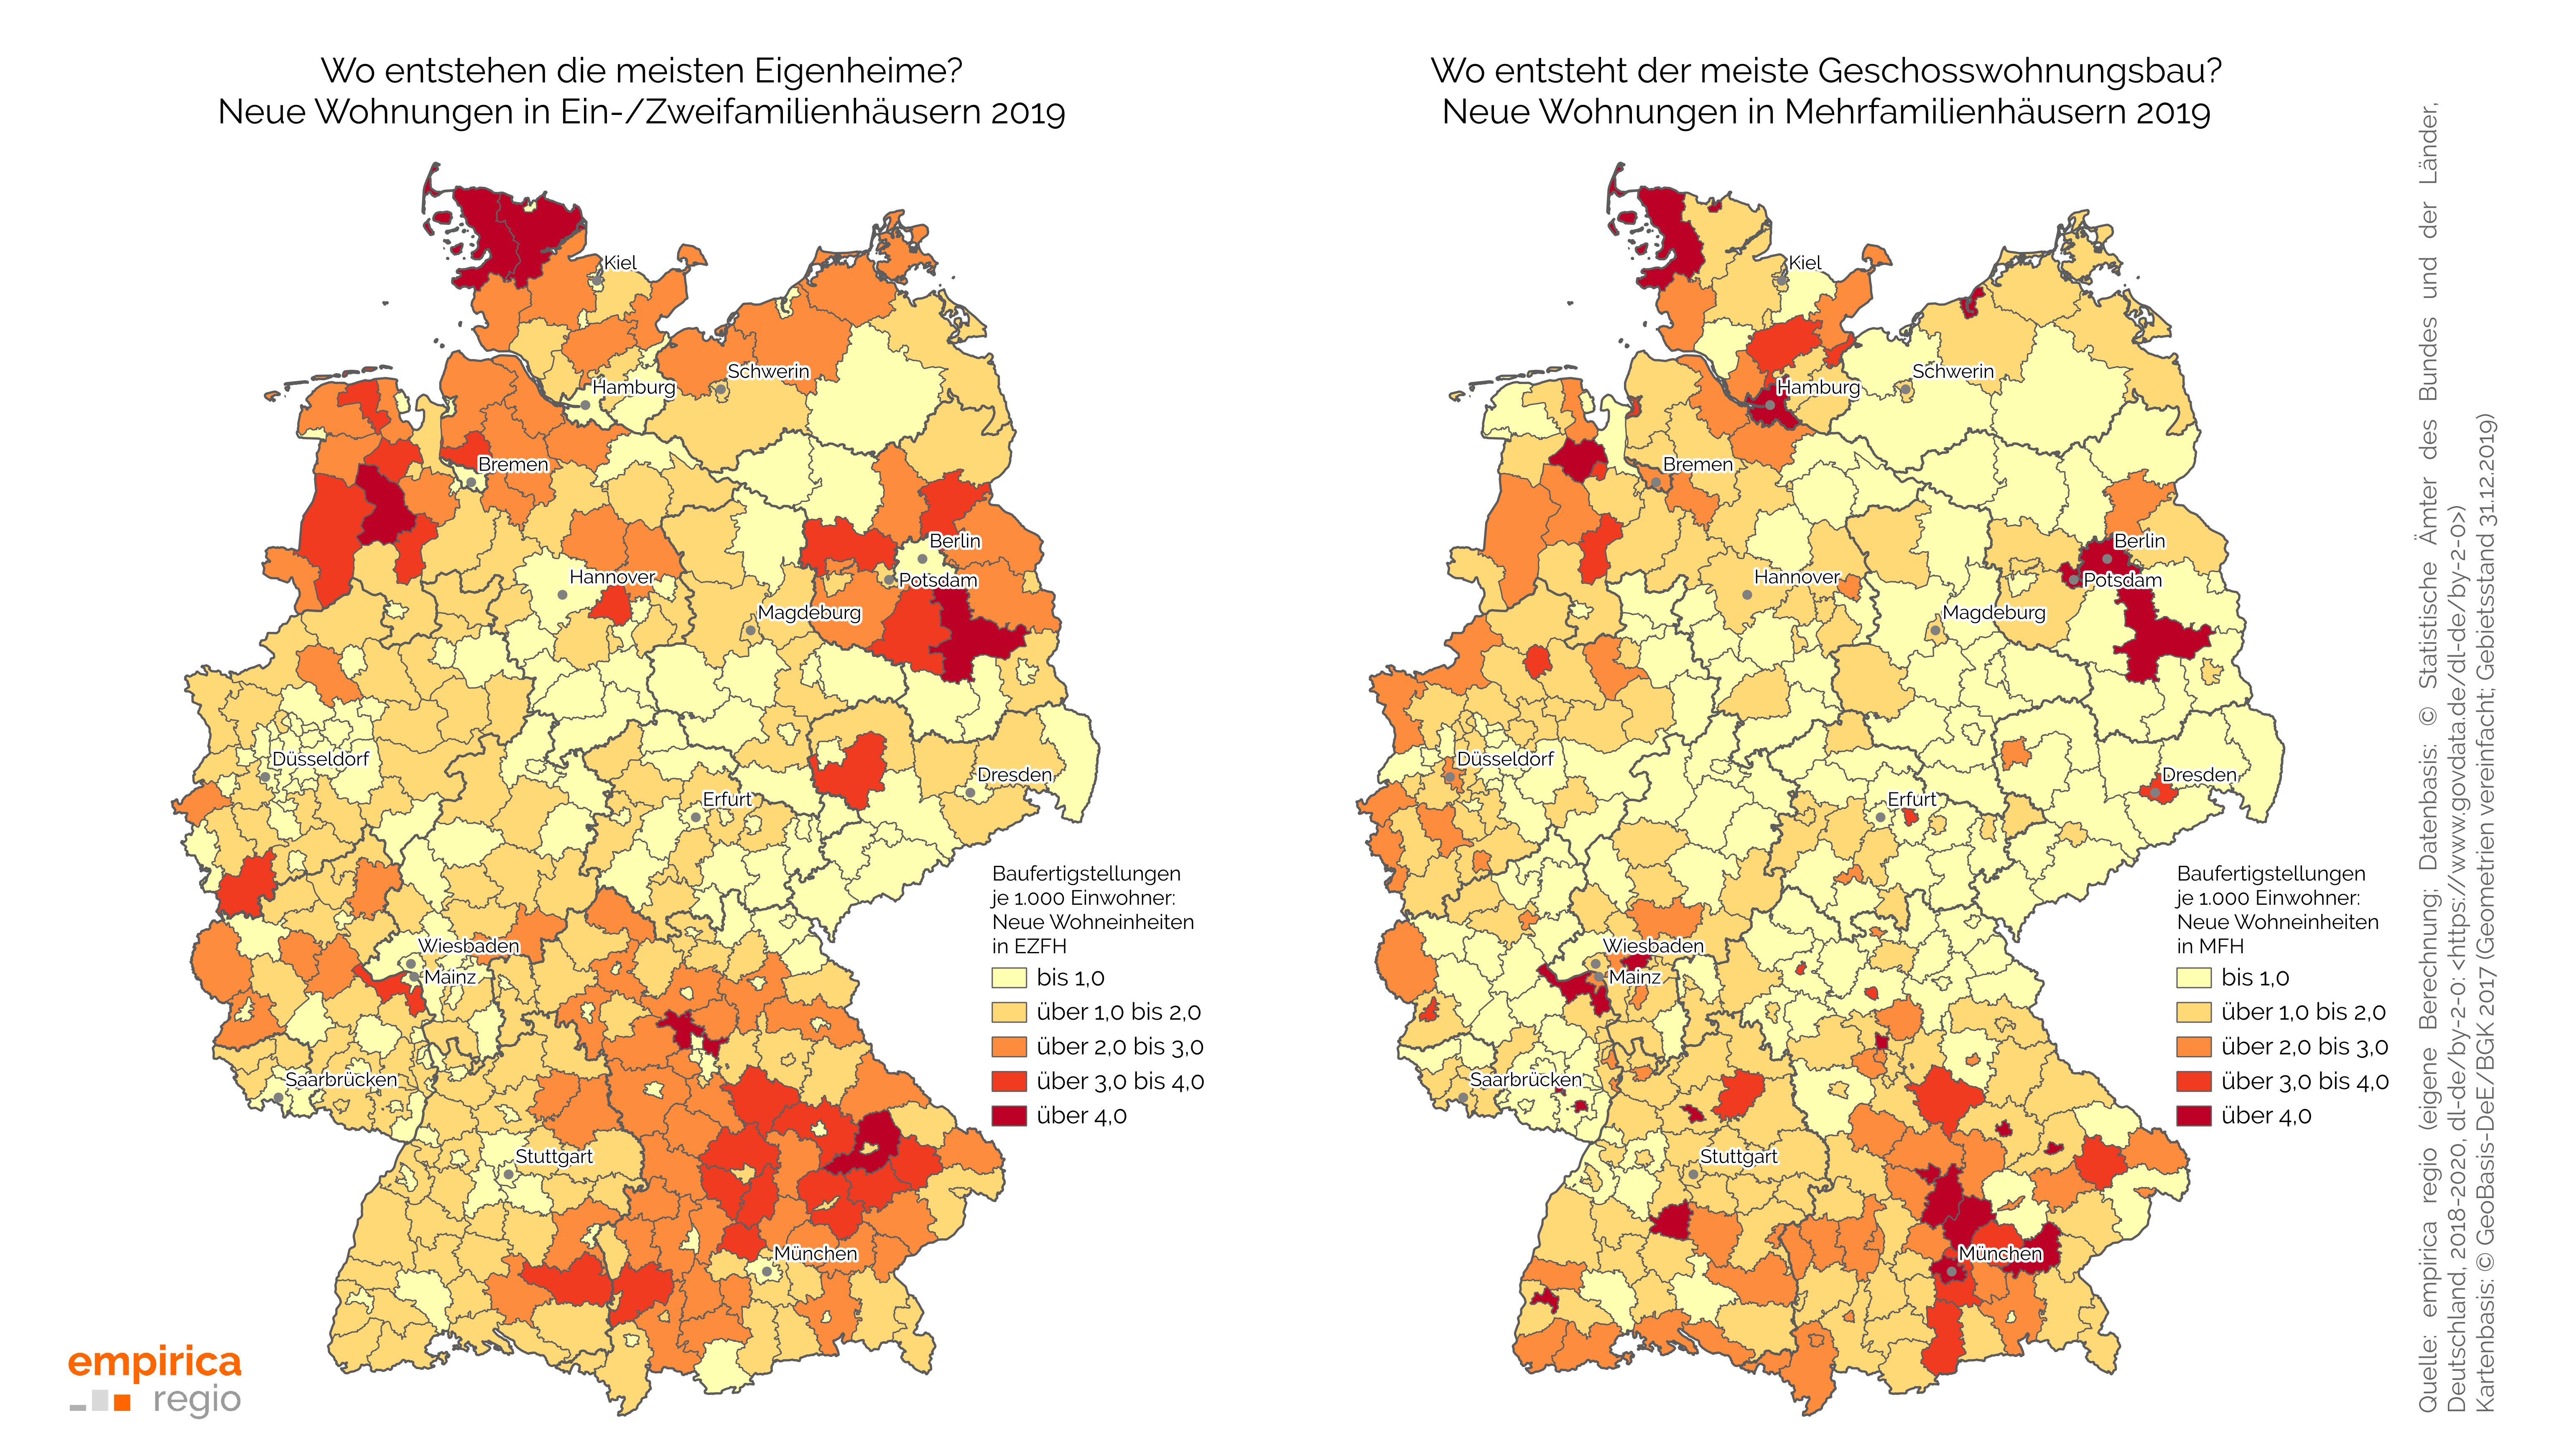 Bauintensität für Neubauwohnungen in Ein-/Zweifamilienhäusern und Mehrfamilienhäusern in den Kreisen und kreisfreien Städten in Deutschland